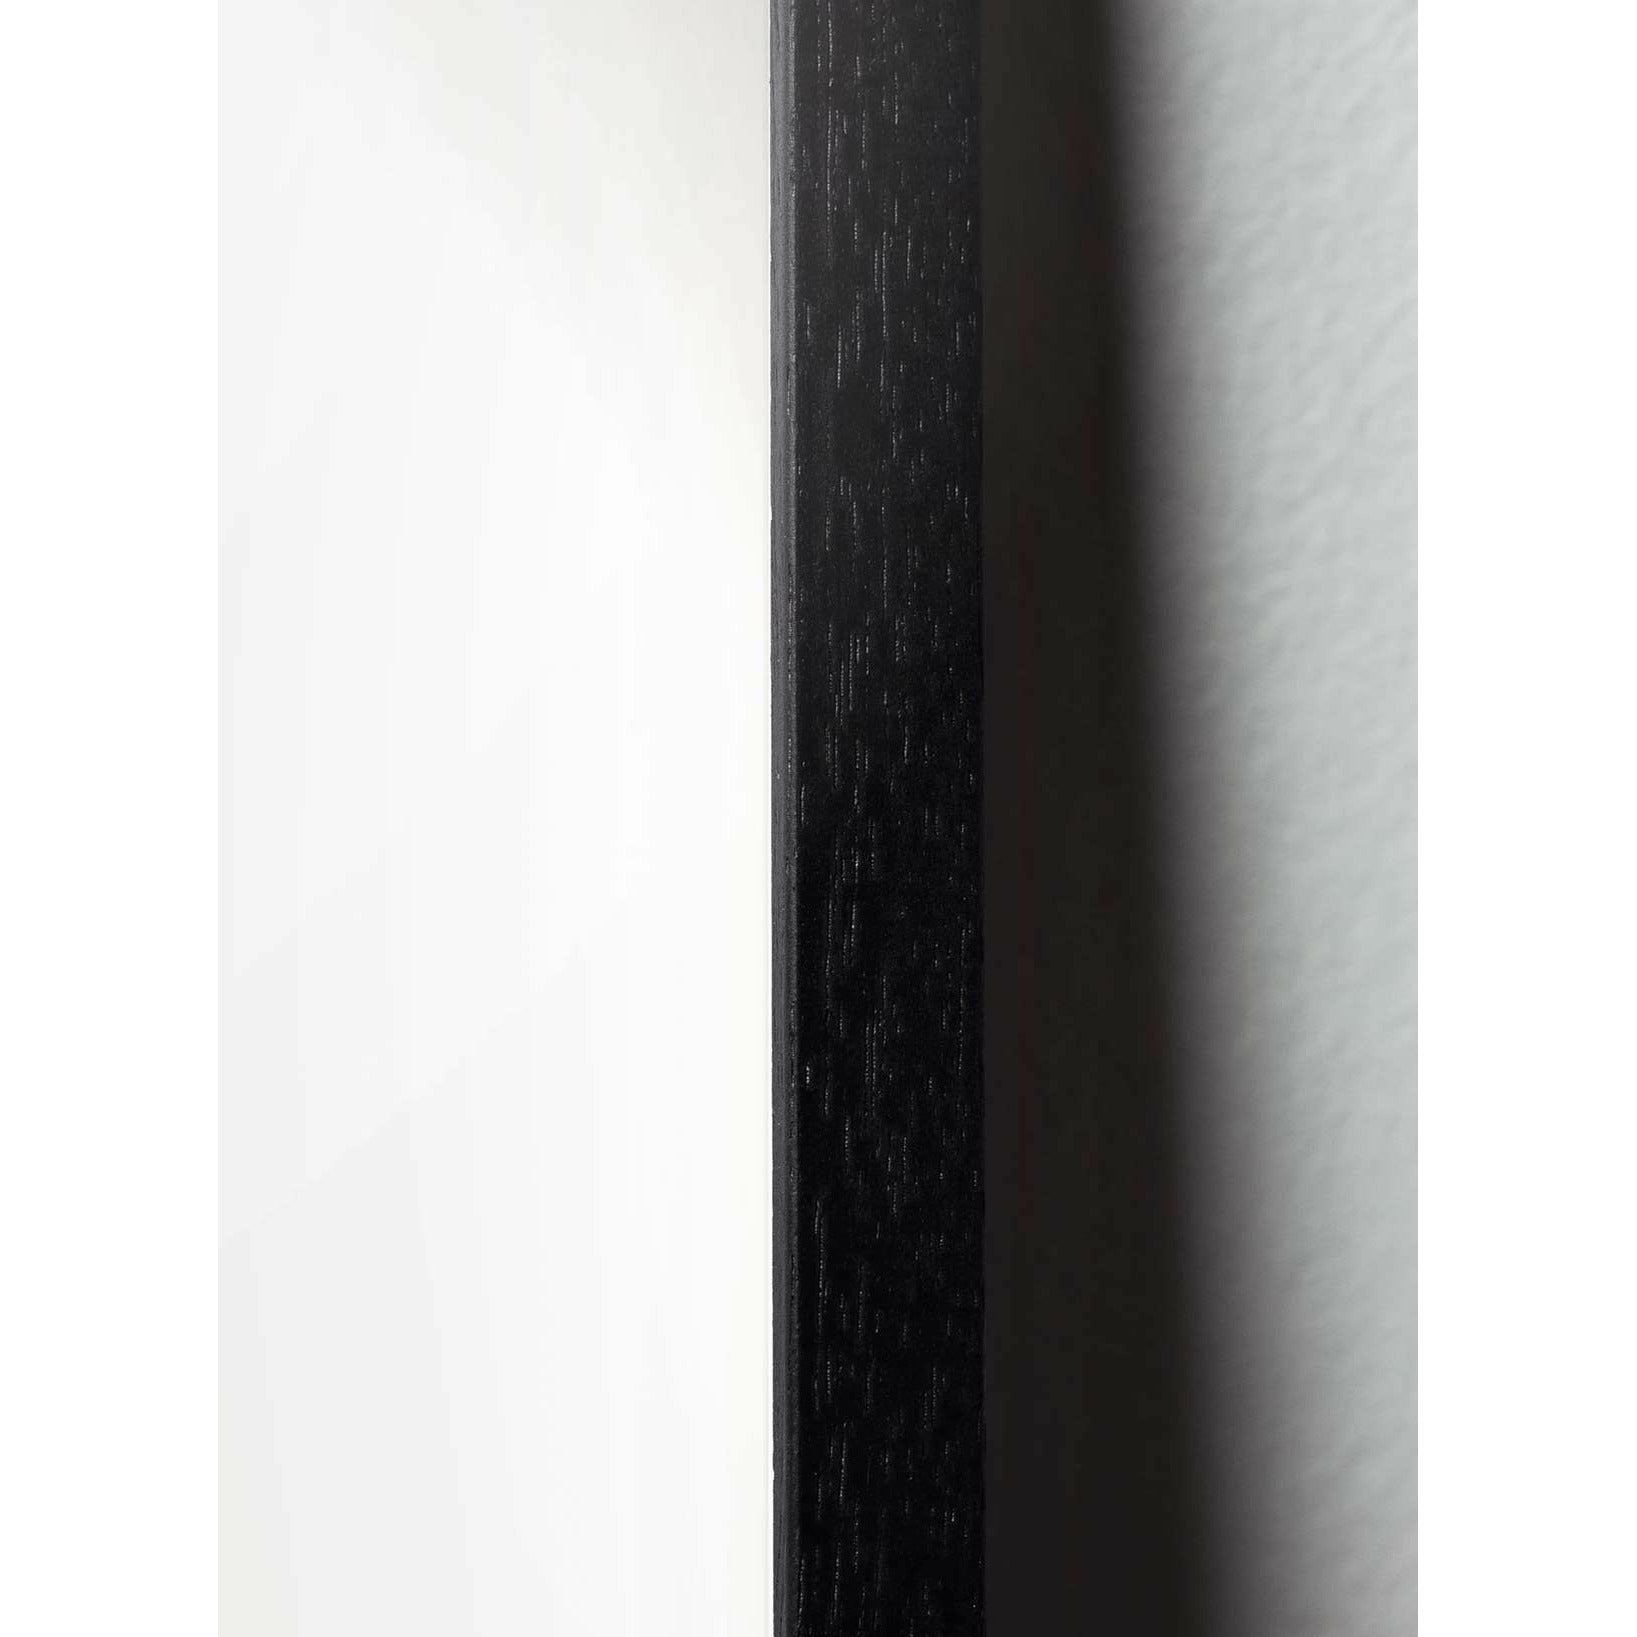 Plakát Ant Line Brainchild, rám v černém lakovaném dřevu A5, bílé pozadí